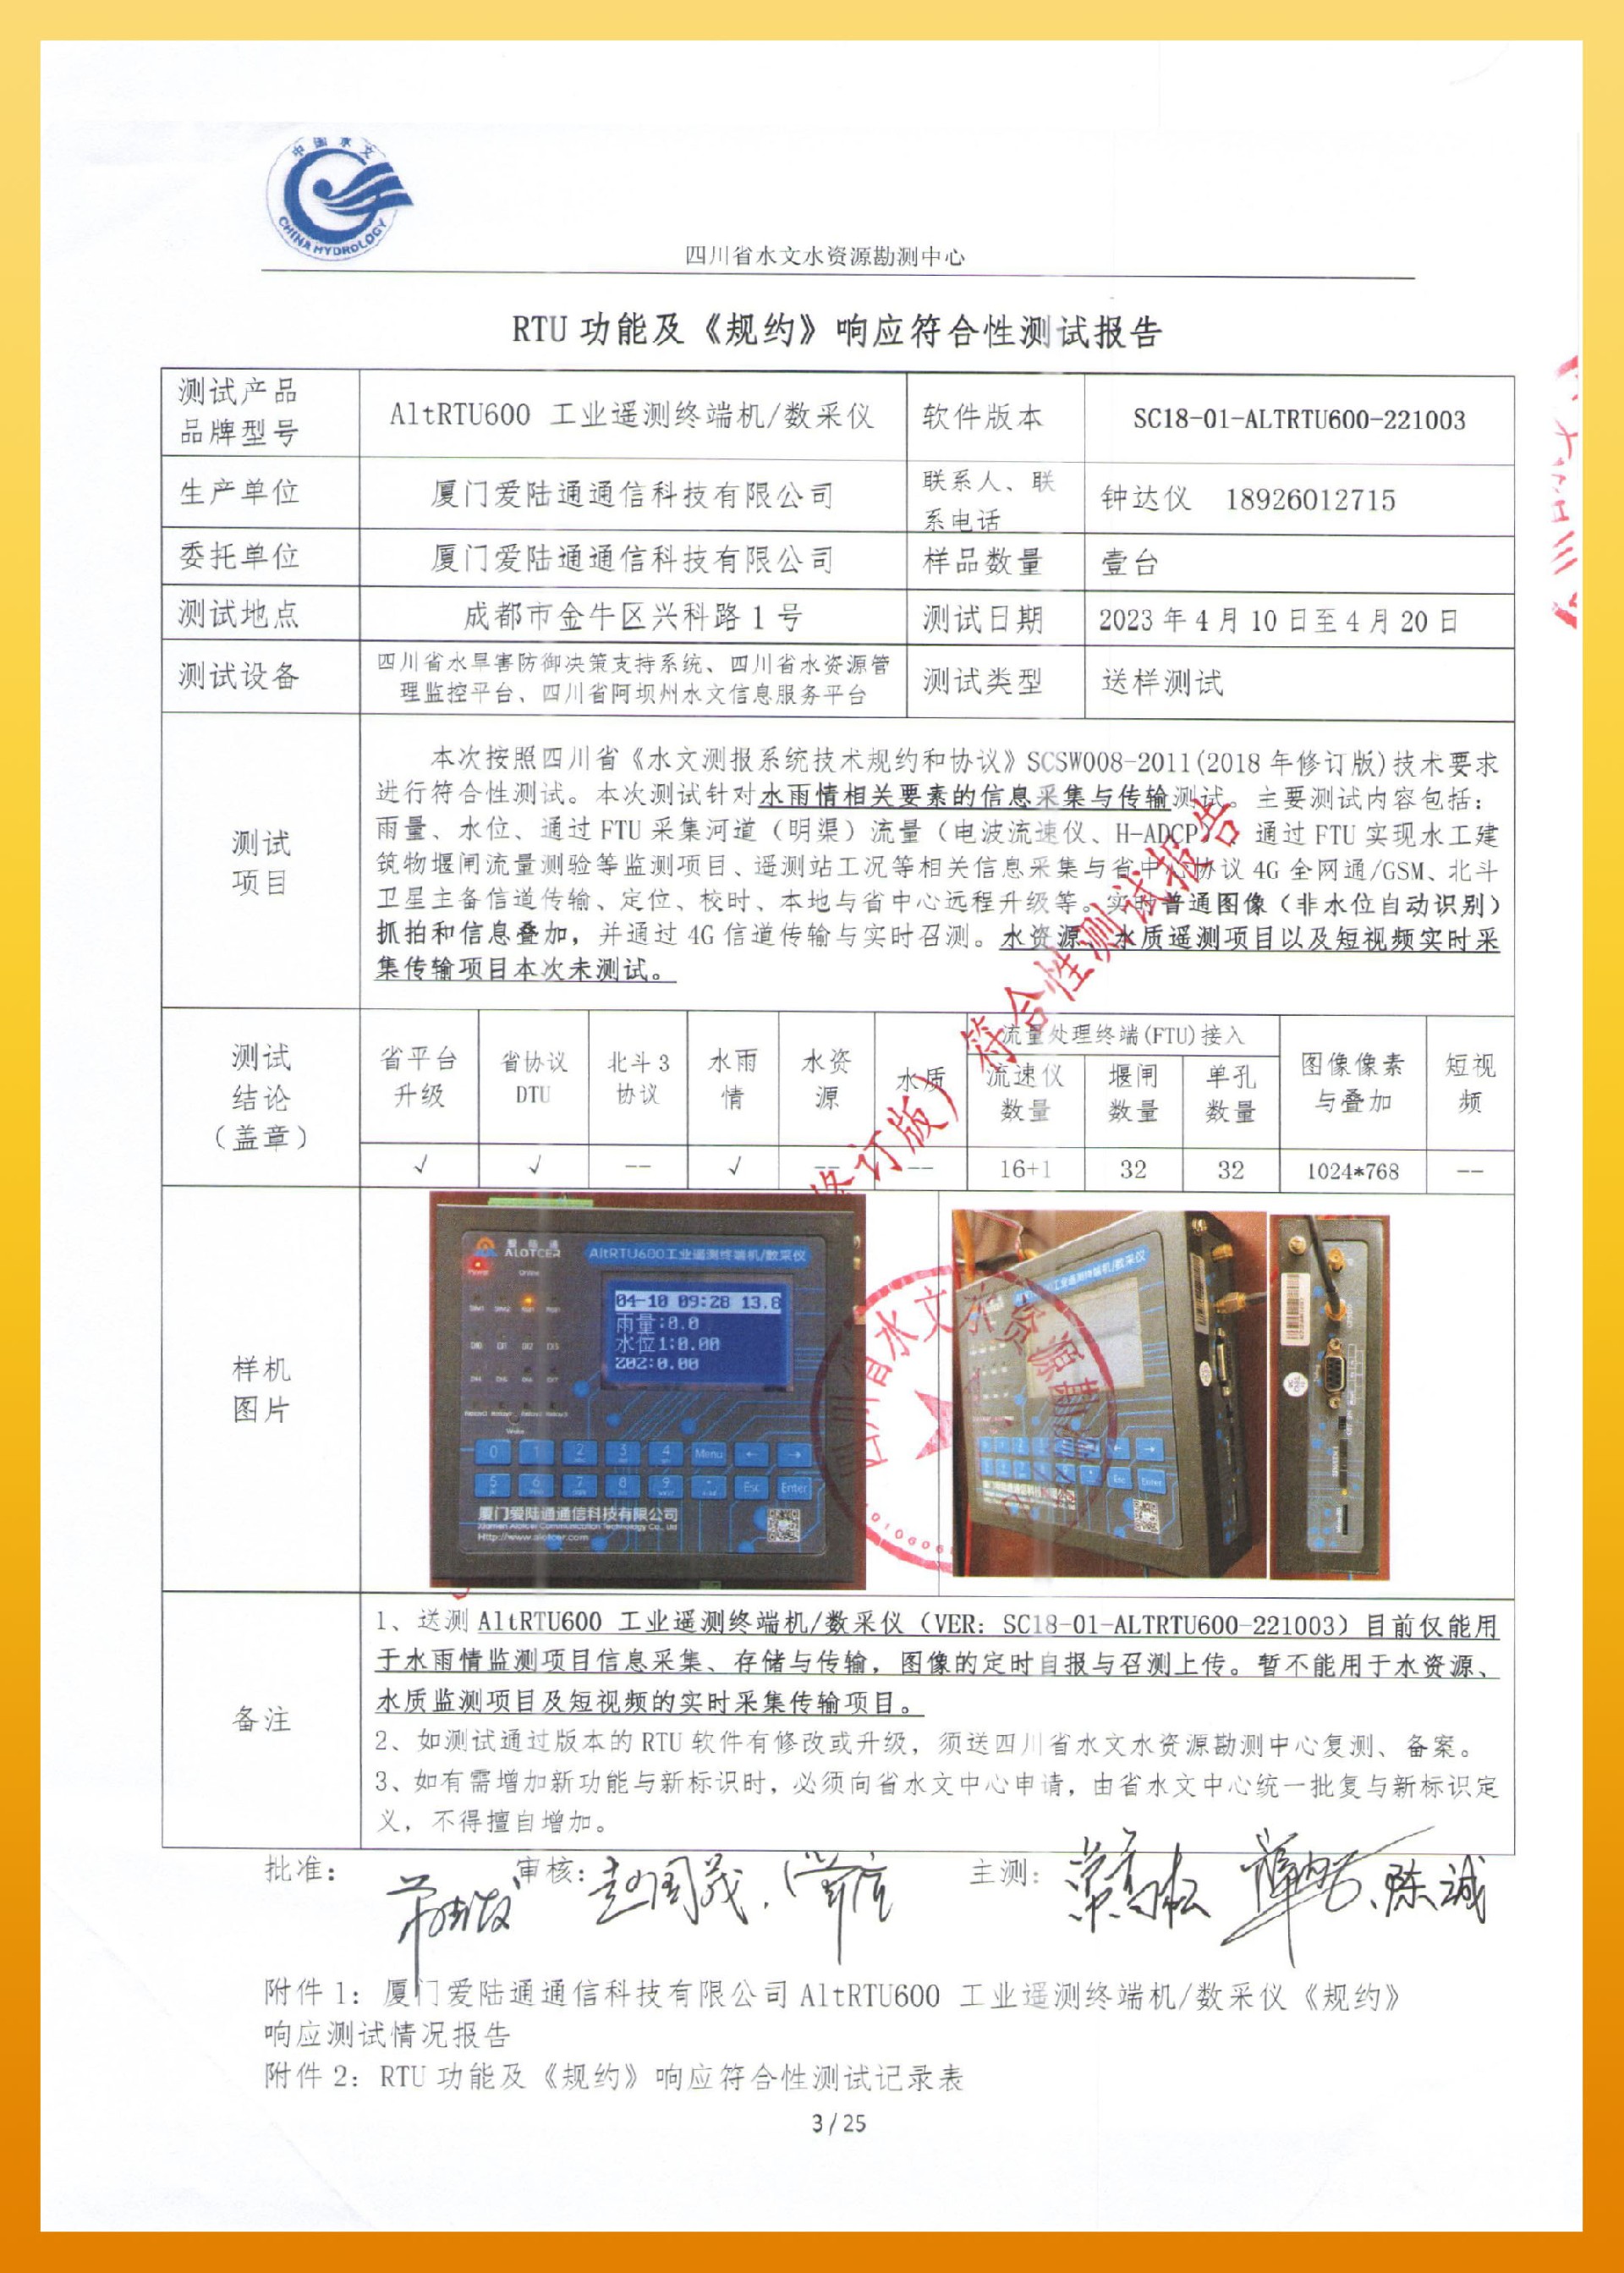 pc28官方-四川水文测报系统技术规约和协议 SCSW008-2011-3.jpg